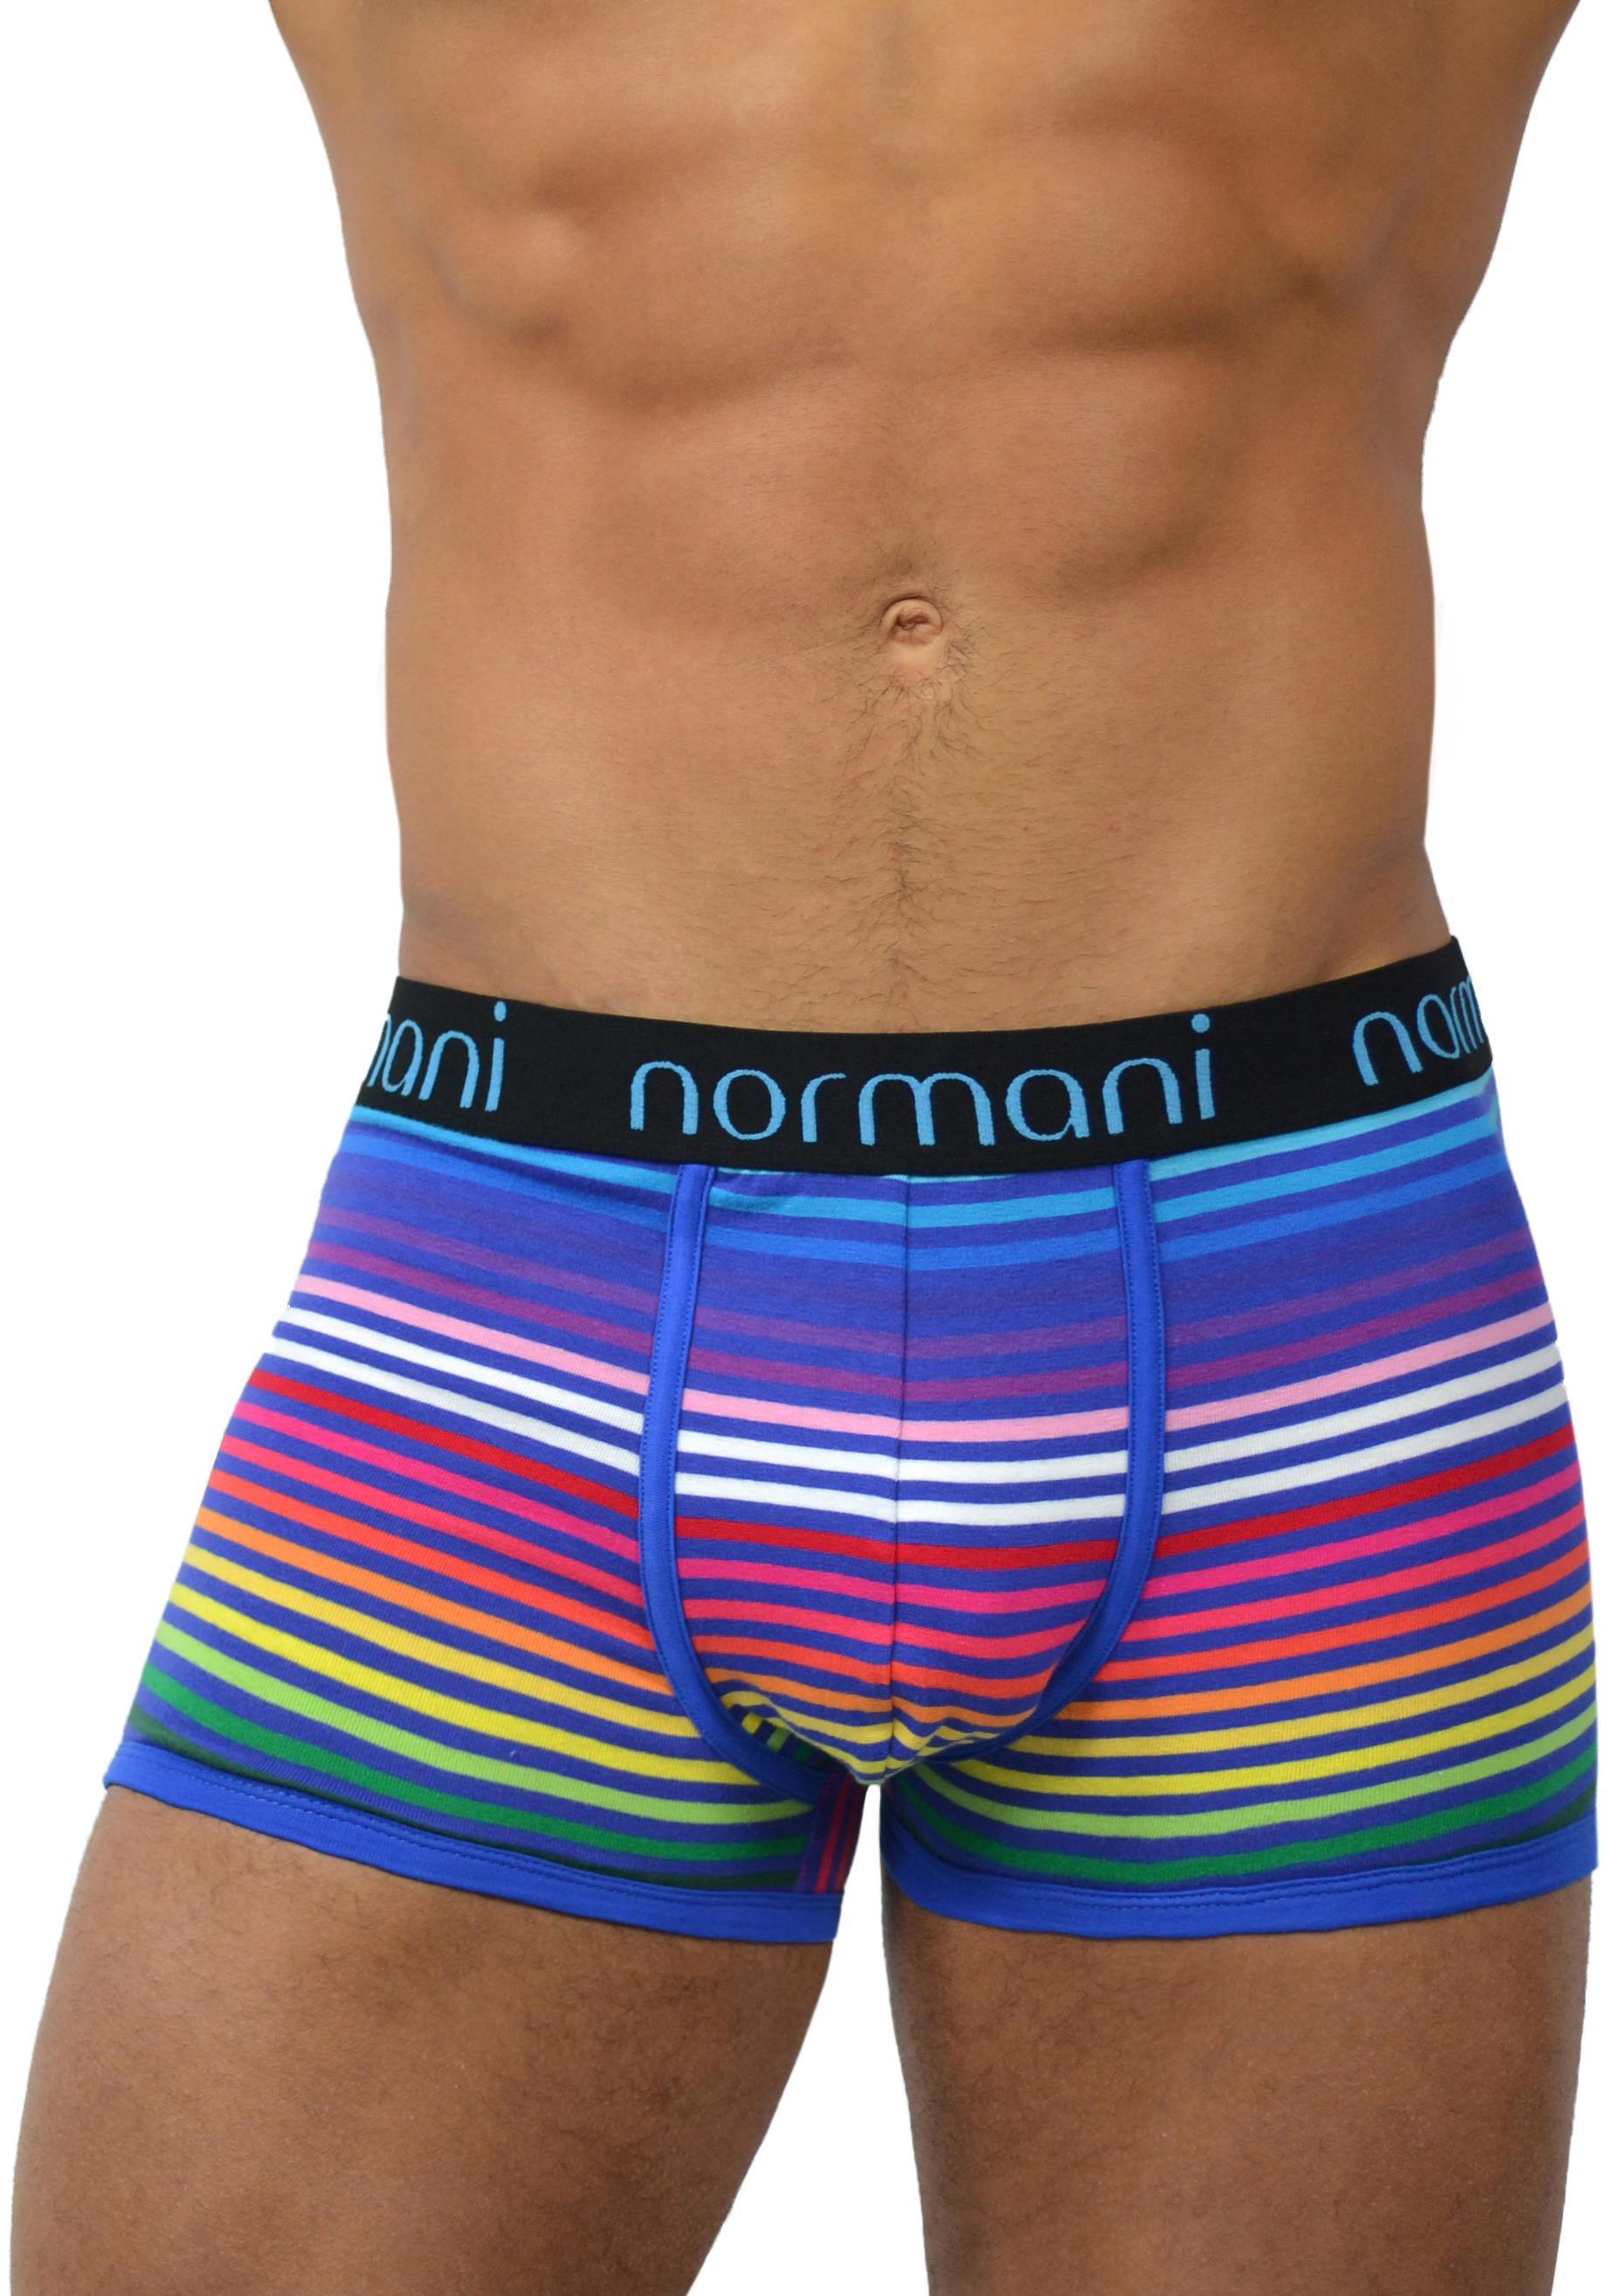 Боксеры normani 6 Stück Retro s aus Baumwolle, цвет Rainbow Stripes